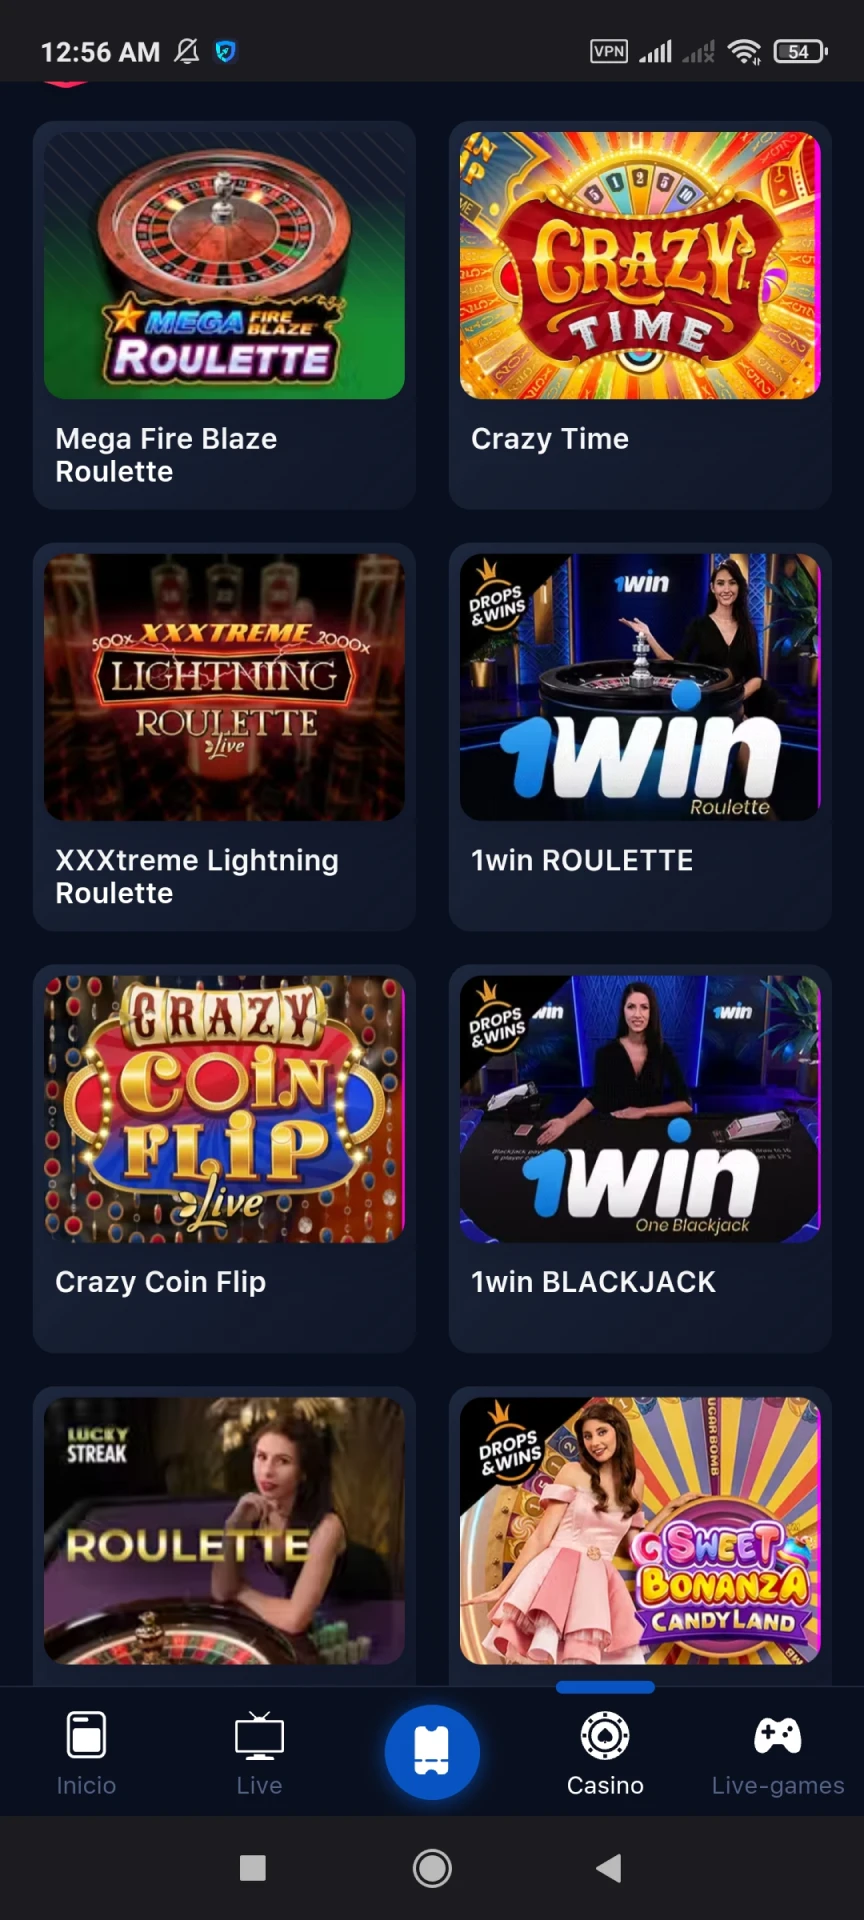 Elija cualquier juego de casino a través de la aplicación 1win.